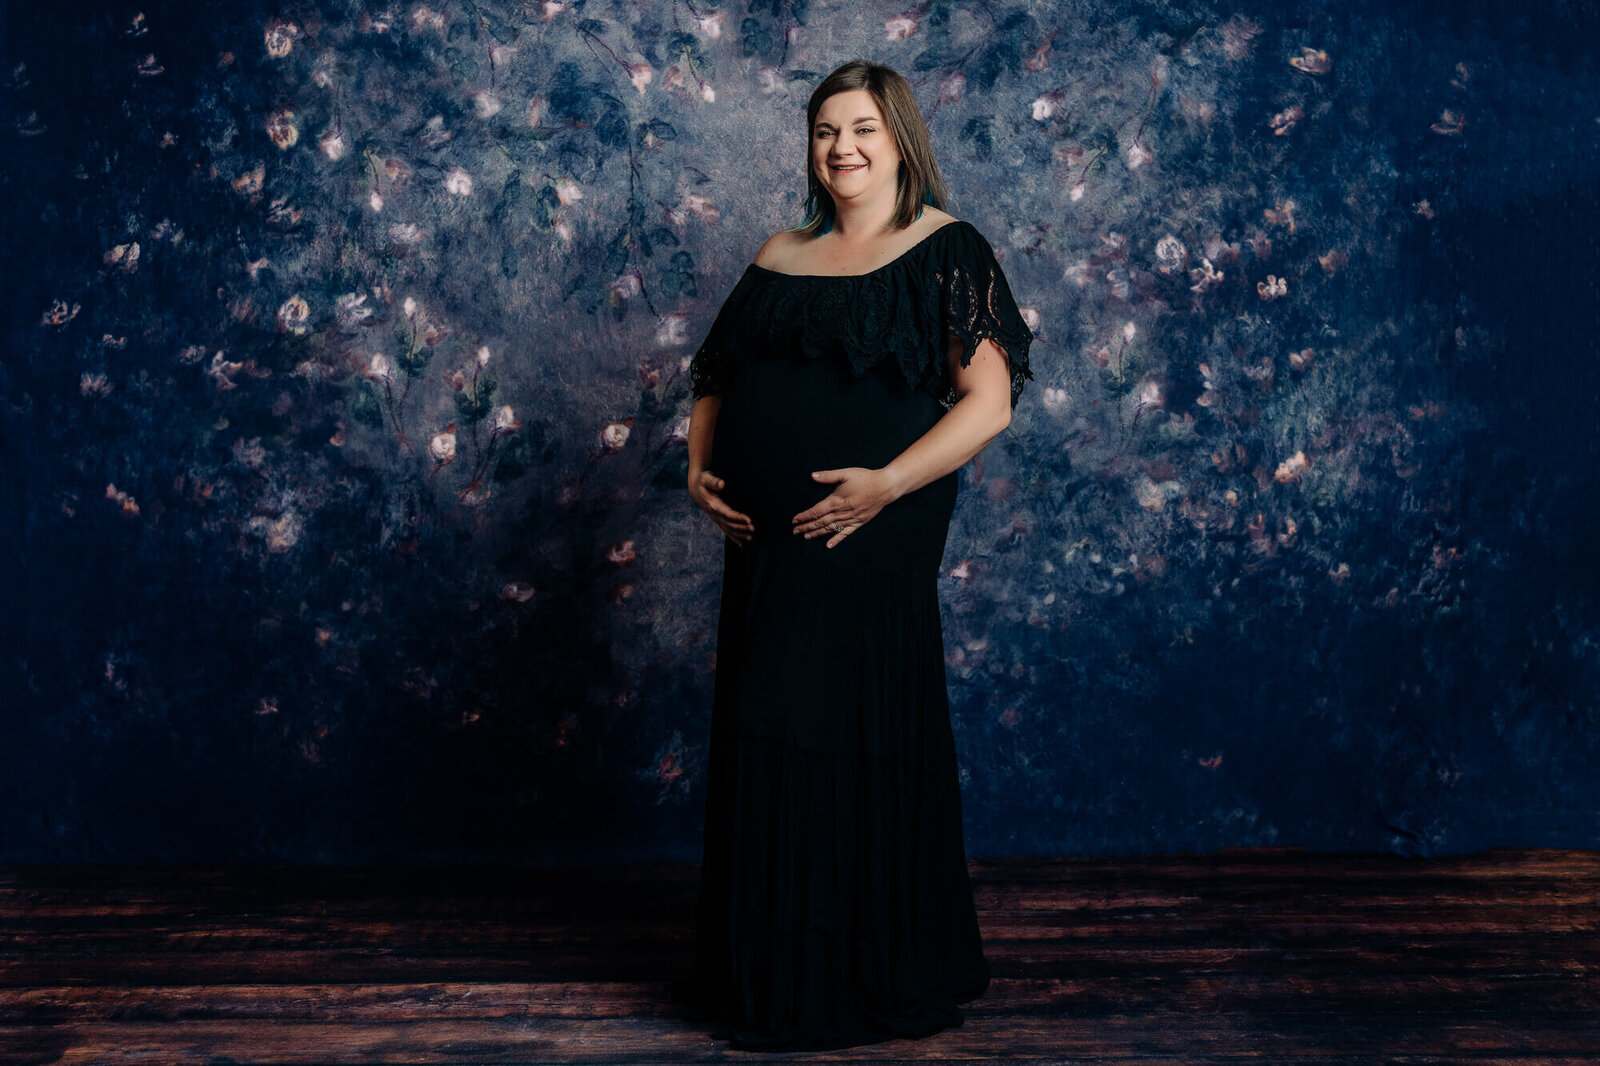 Woman poses for Prescott AZ maternity photos